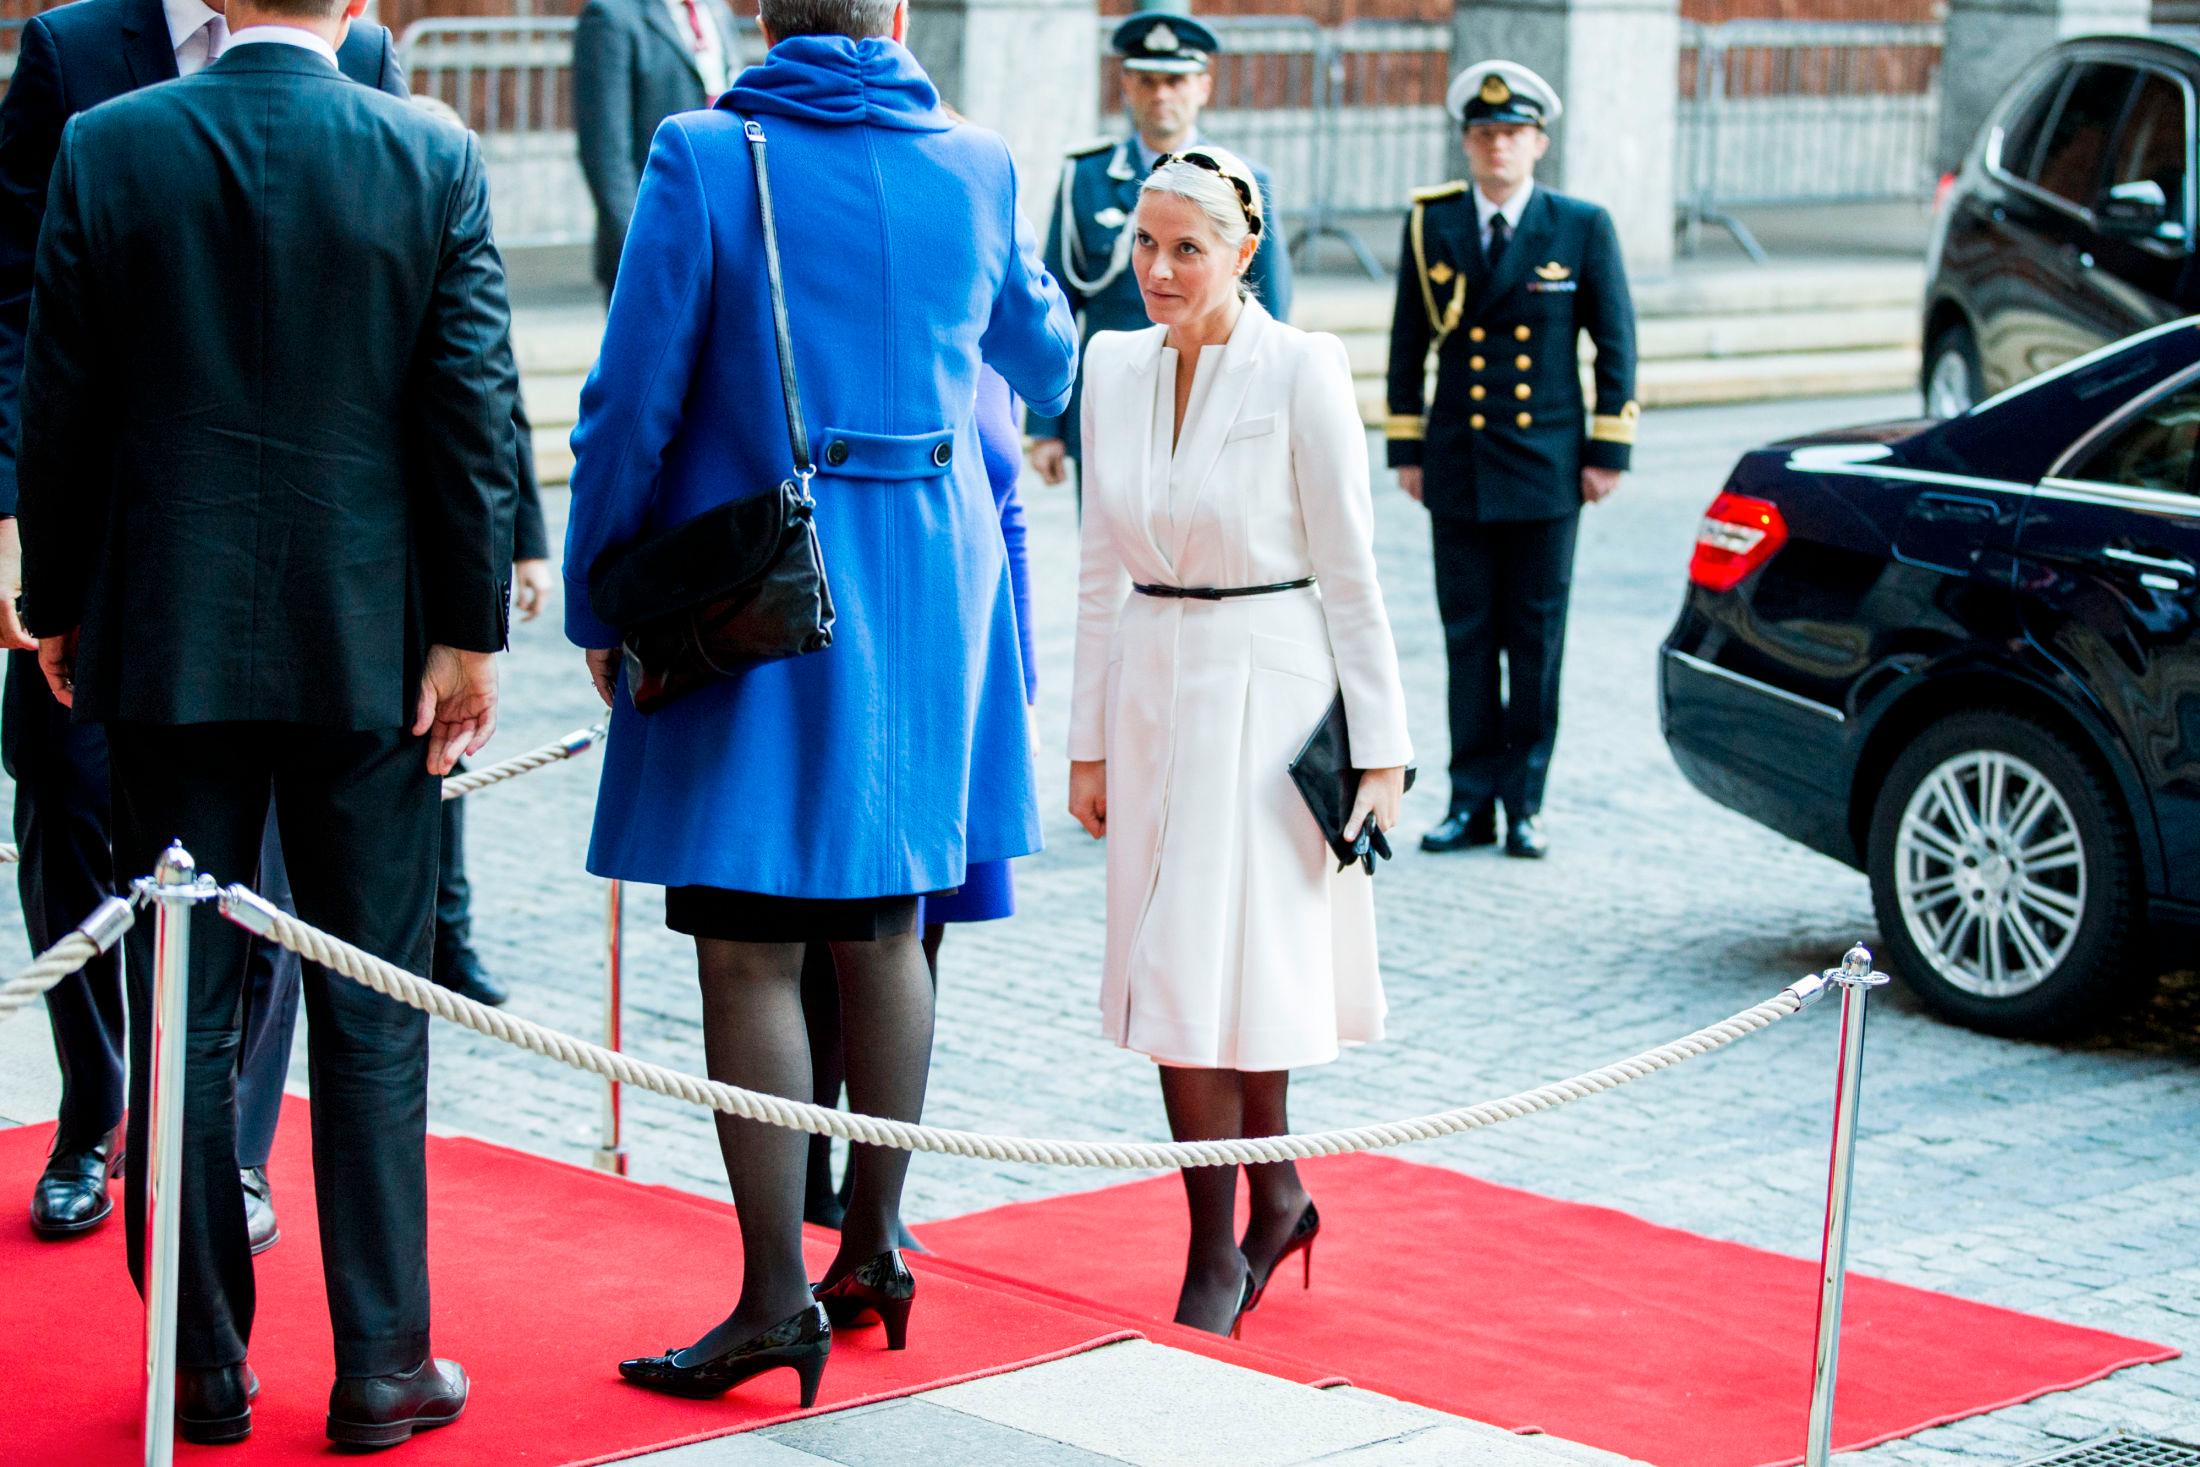 ENKELT: Sort og hvitt er en klassisk kombo, og det vet kronprinsesse Mette-Marit. Foto: NTB Scanpix